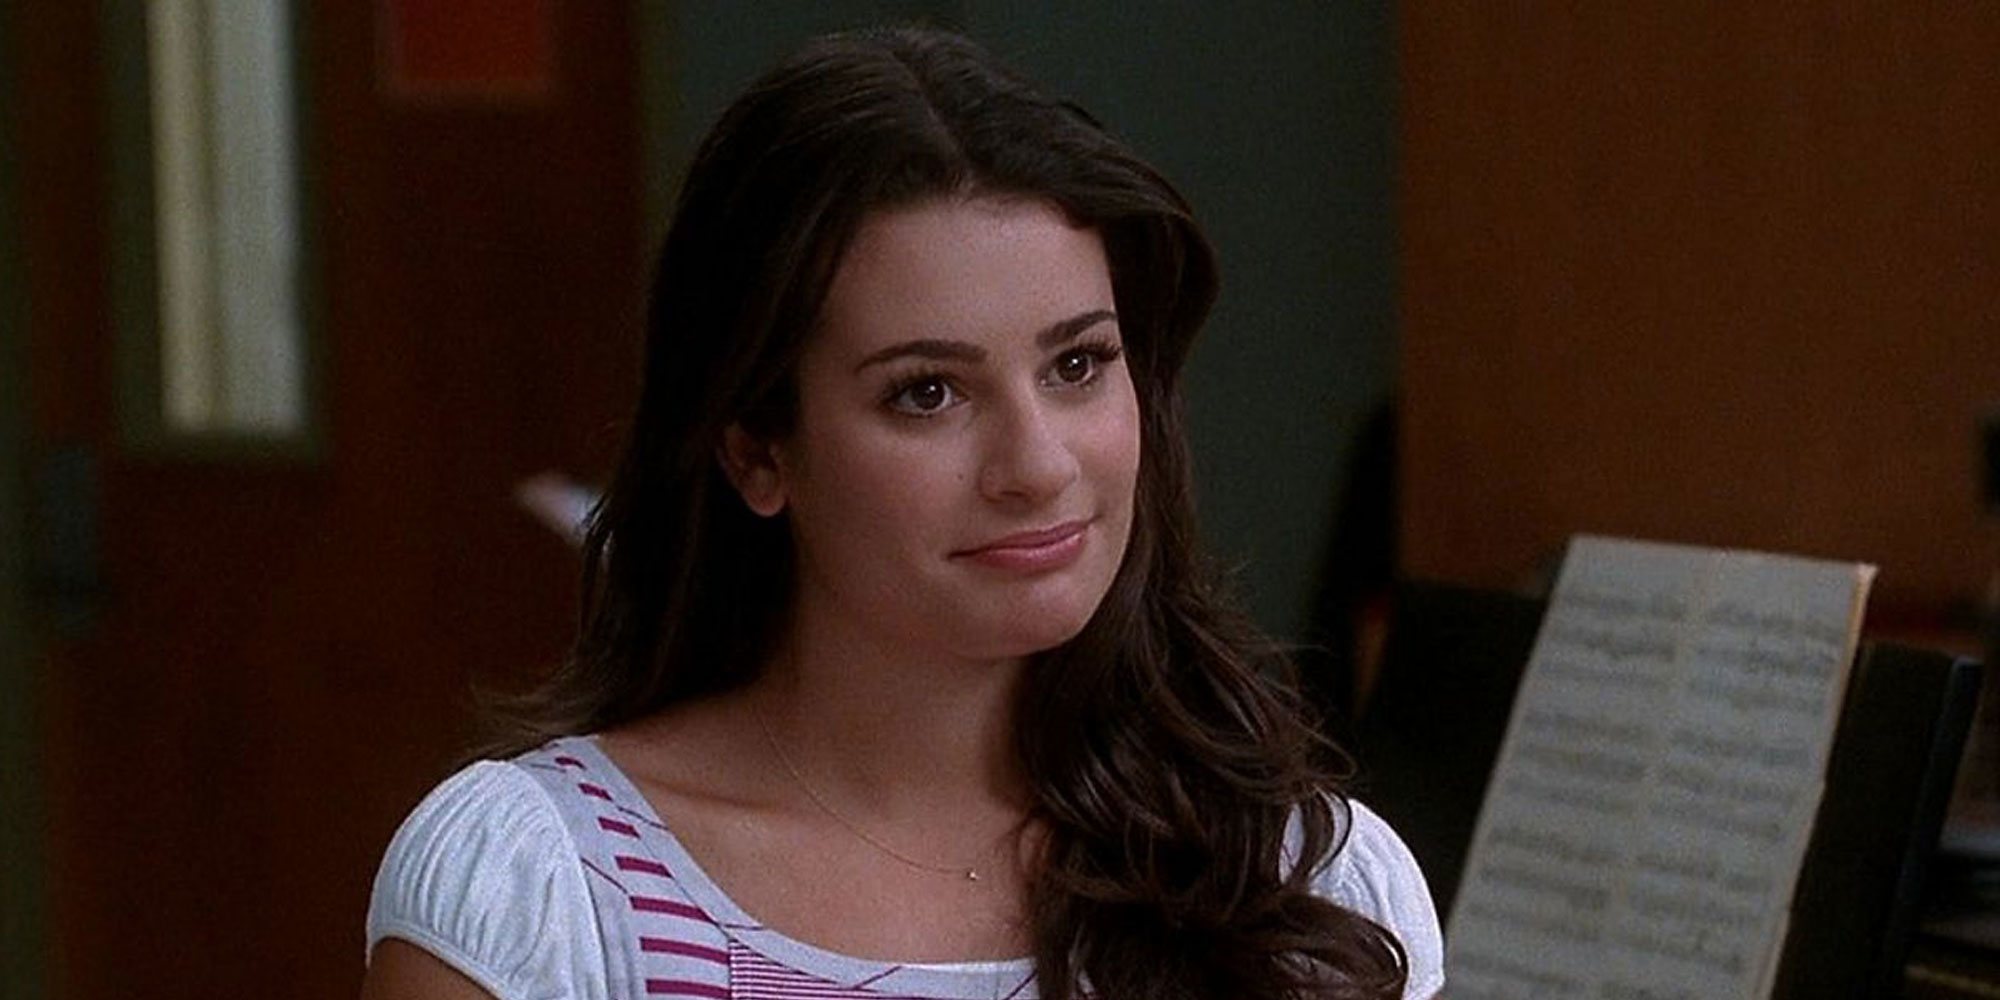 Samantha Ware da detalles sobre las microagresiones que sufrió de Lea Michele cuando grababan 'Glee'